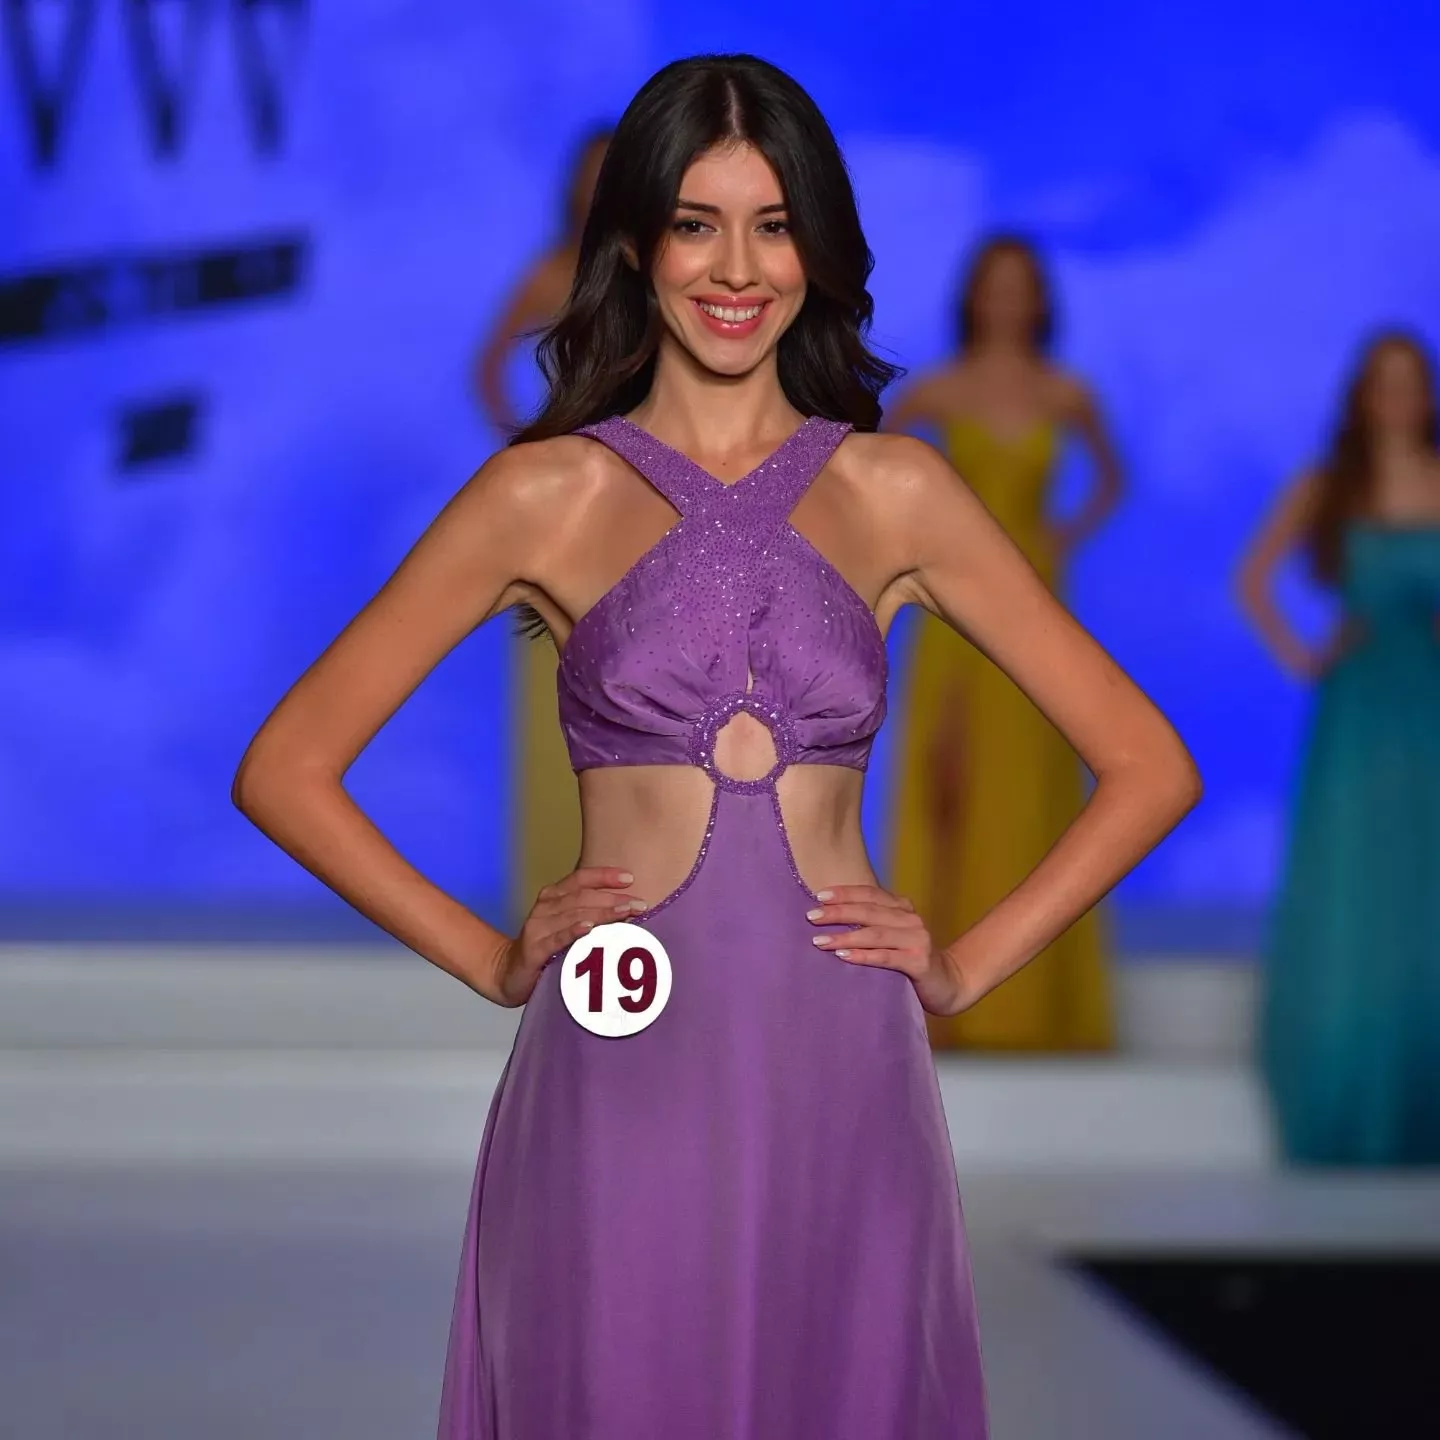 نورسينا ساي ملكة جمال تركيا لعام 2022... وهذا ما نعرفه عنها